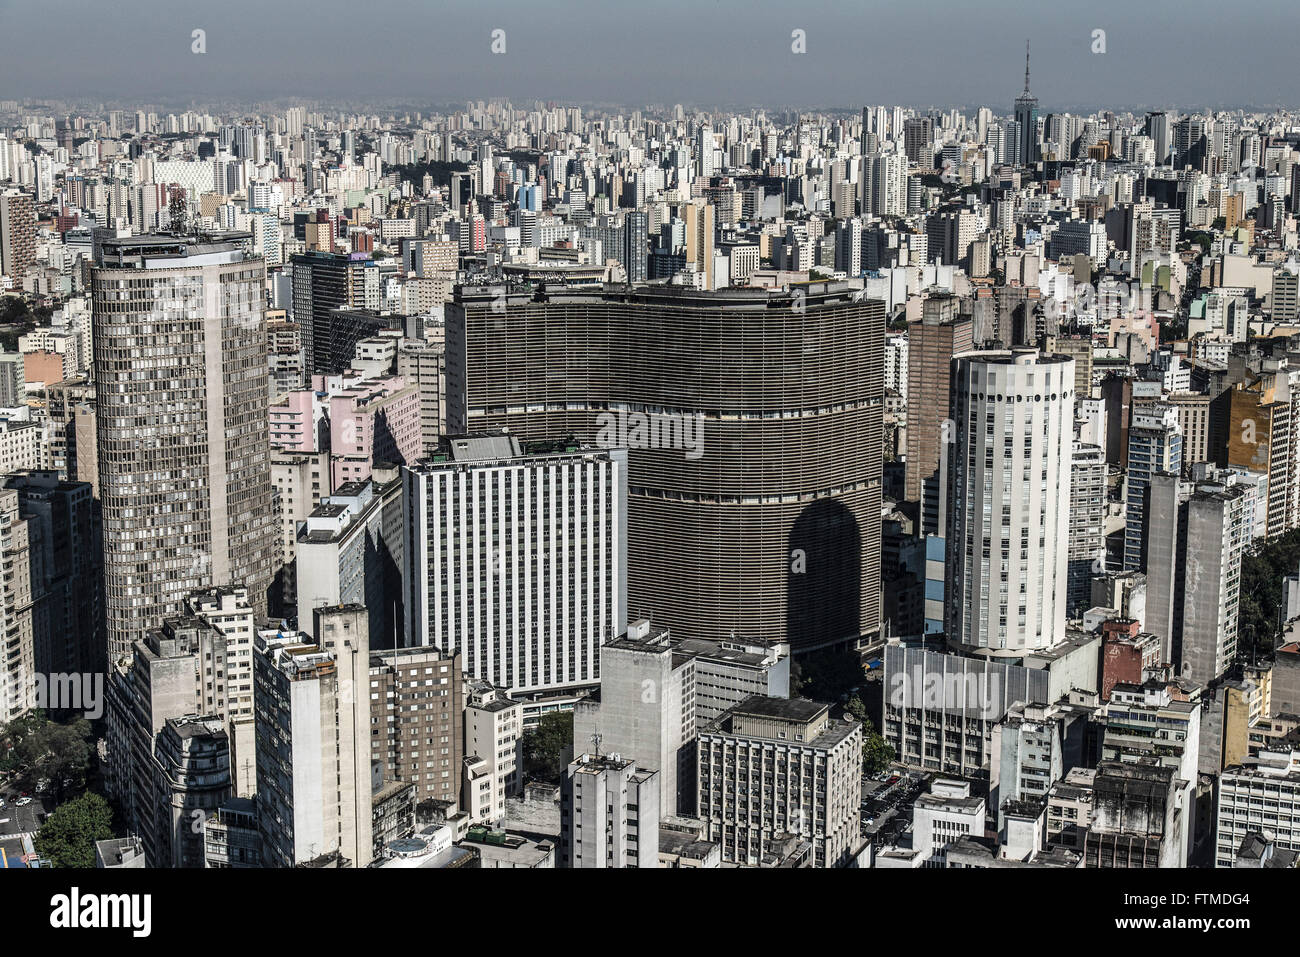 Aerial view of the city center - Edificio Copan to the center Stock Photo